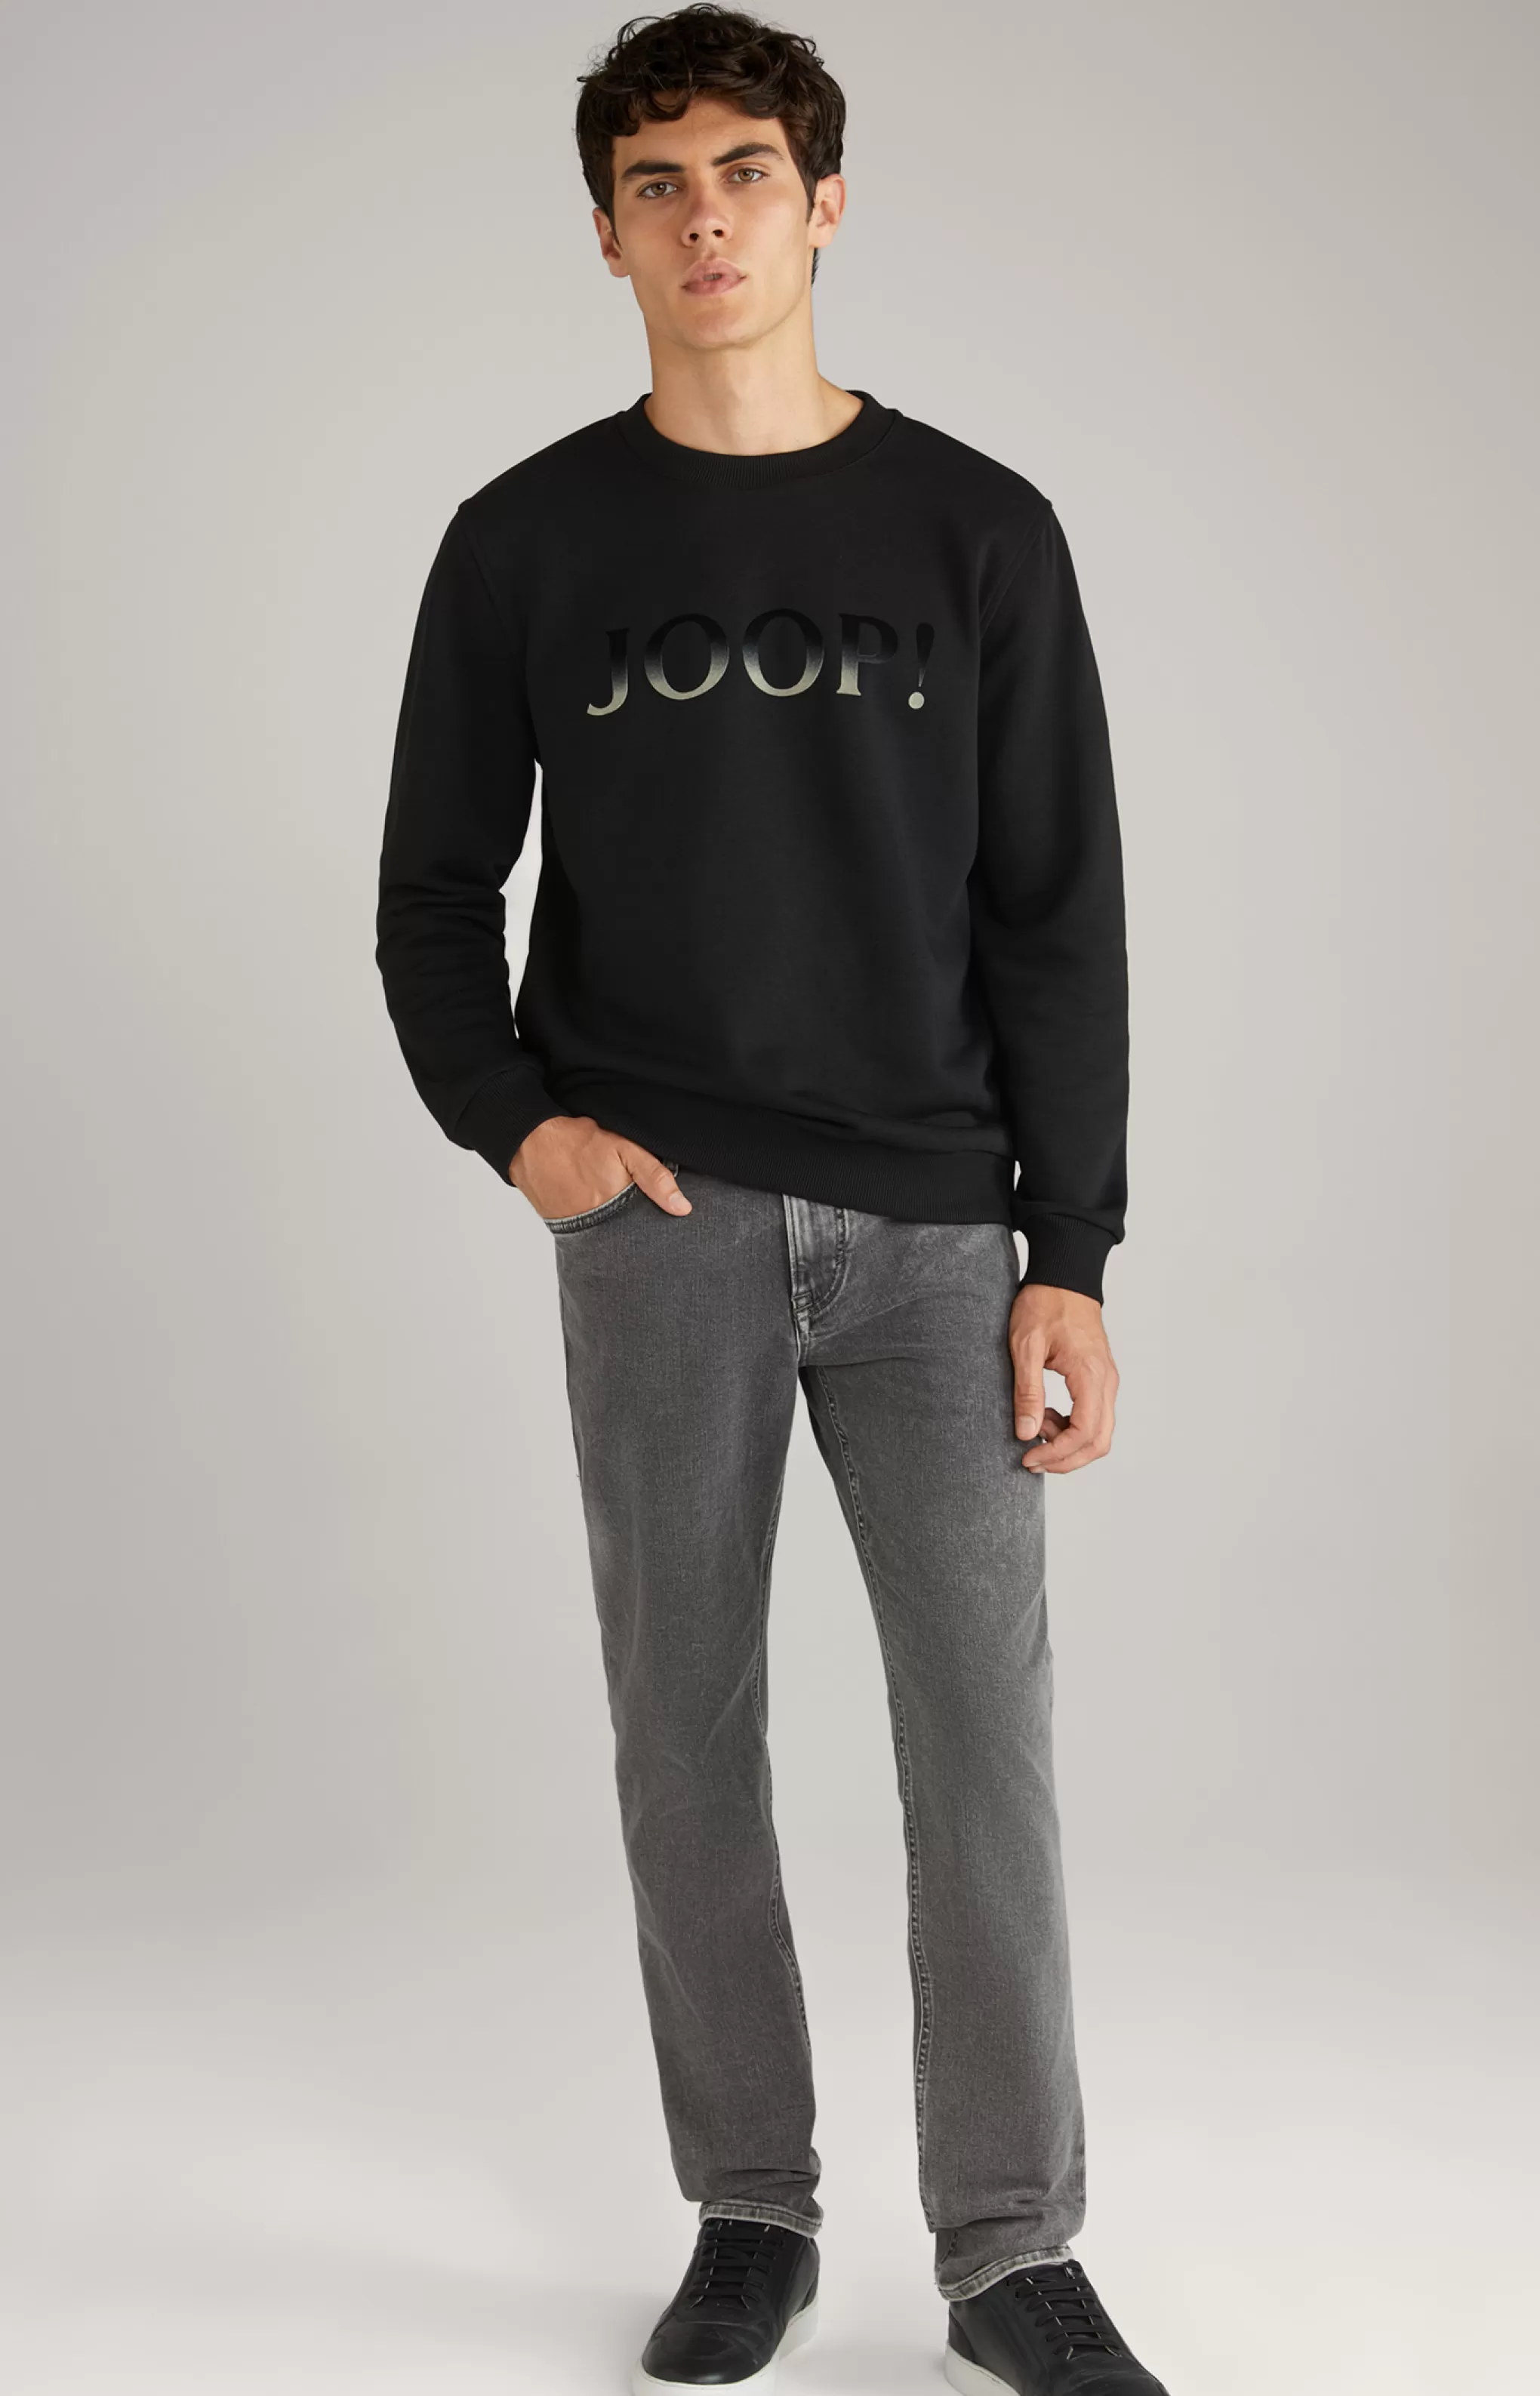 Sweatshirts | Clothing*JOOP Sweatshirts | Clothing Theseus Sweatshirt in